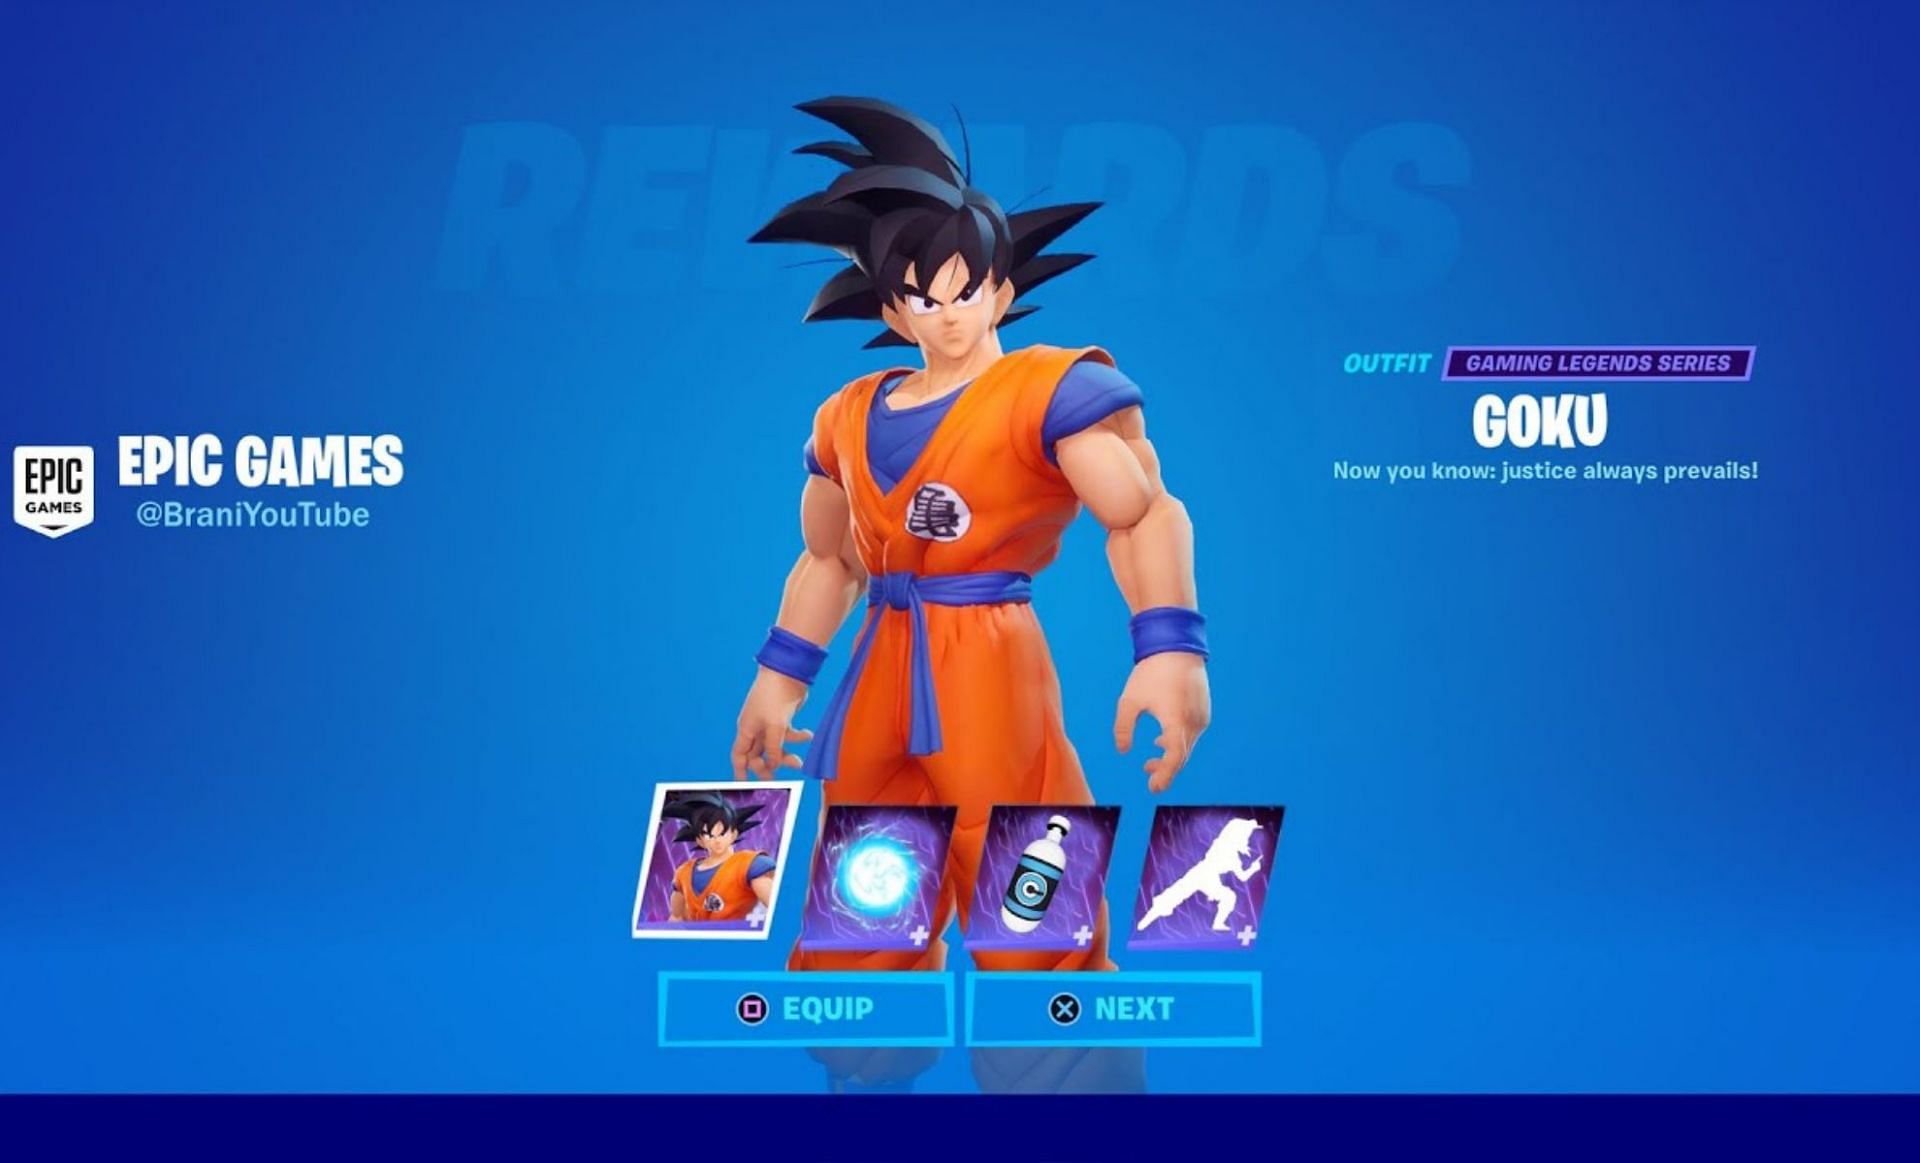 A concept for the Goku skin (Image via Brani on YouTube)